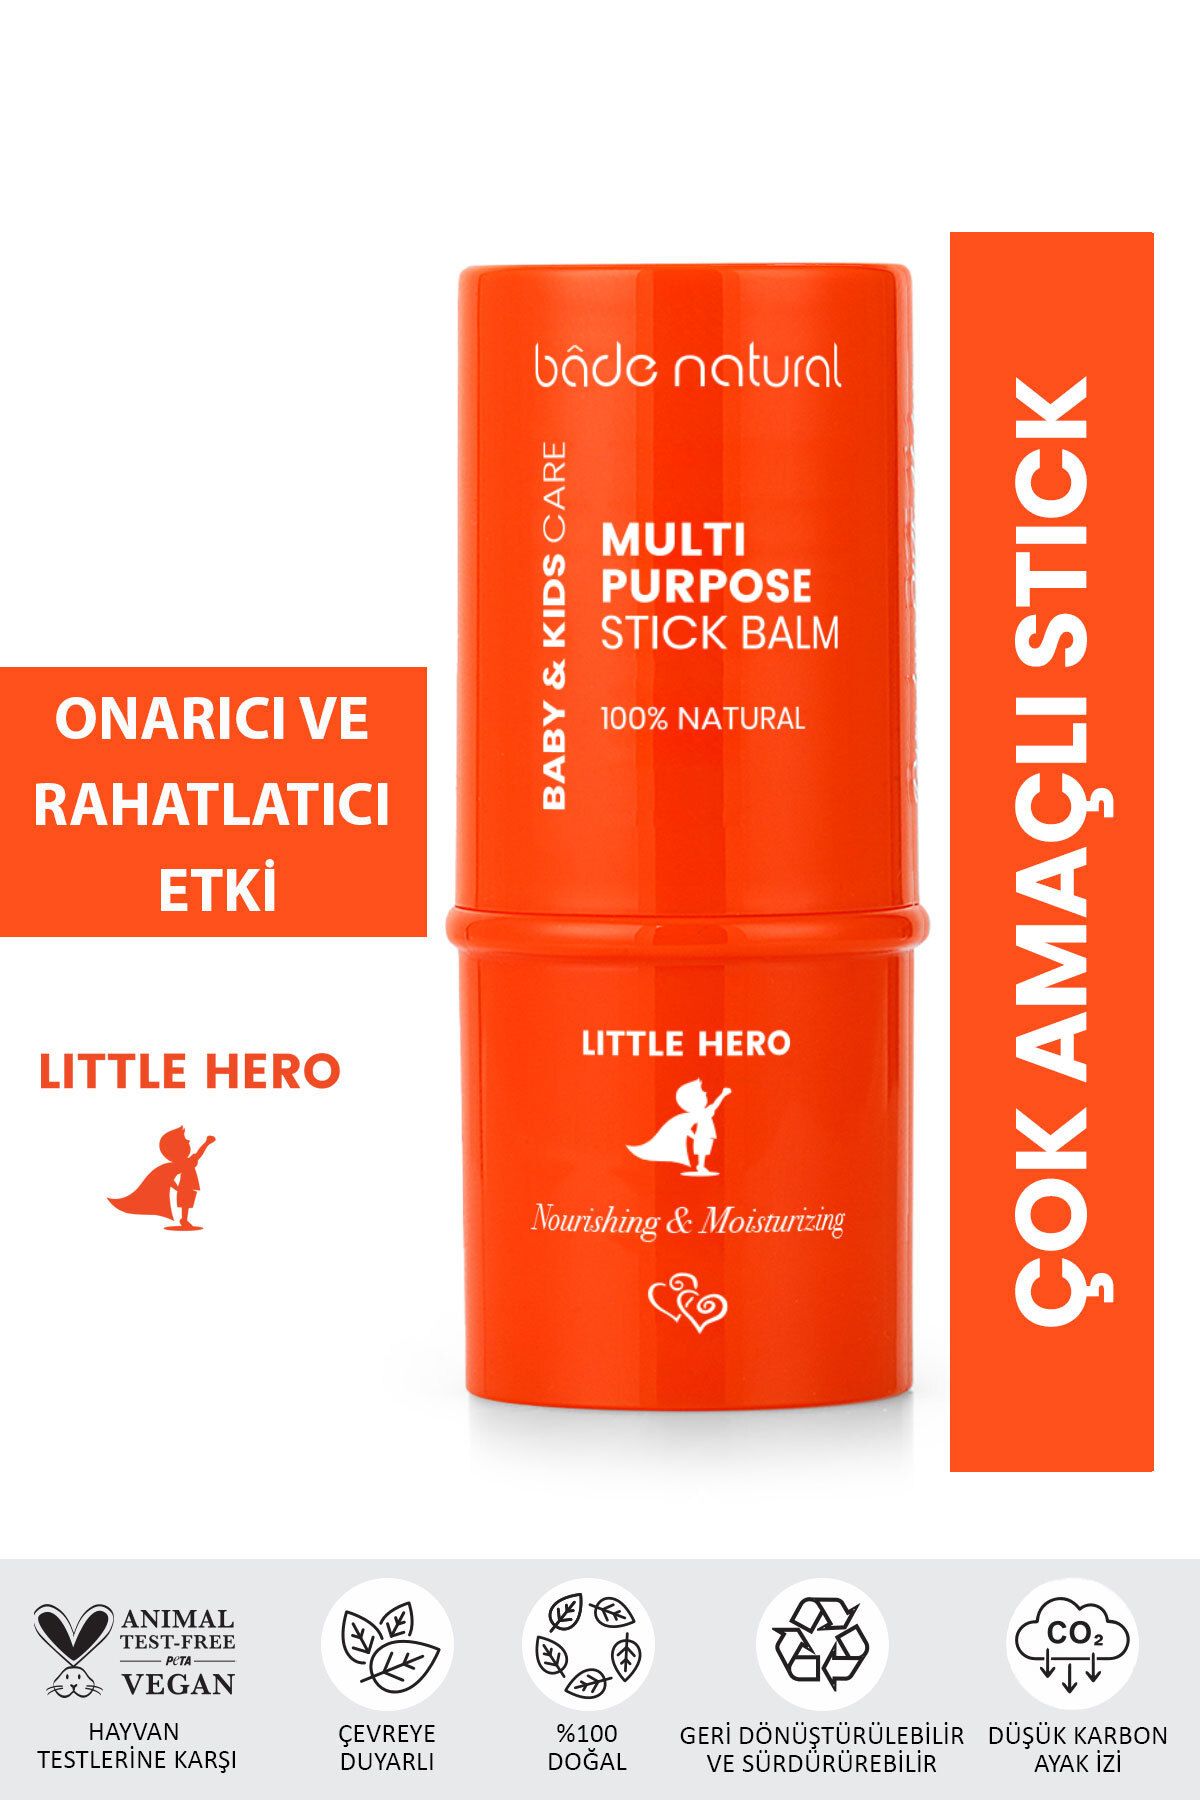 Bade Natural Little Hero %100 Doğal Stick Onarıcı Ve Rahatlatıcı Çok Amaçlı